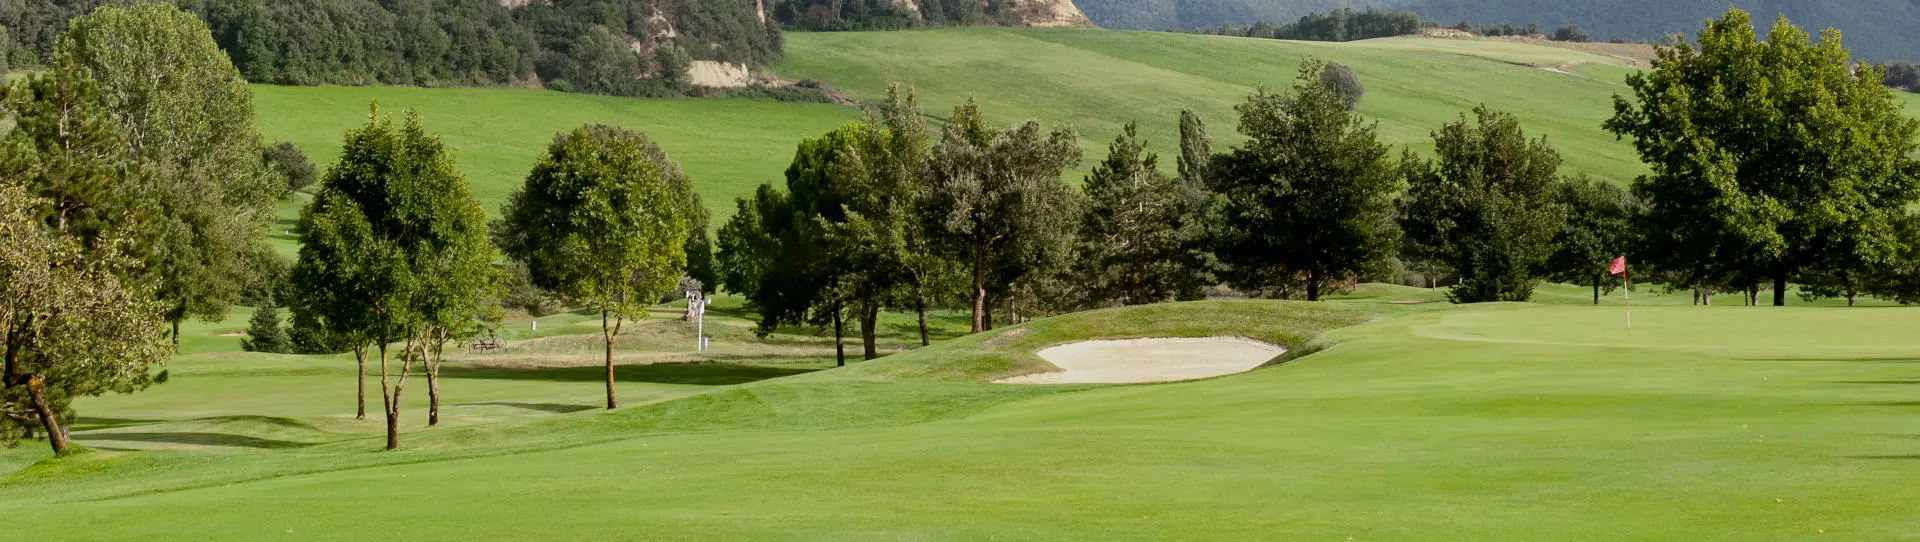 Spain golf courses - Aravell Golf Andorra - Photo 2